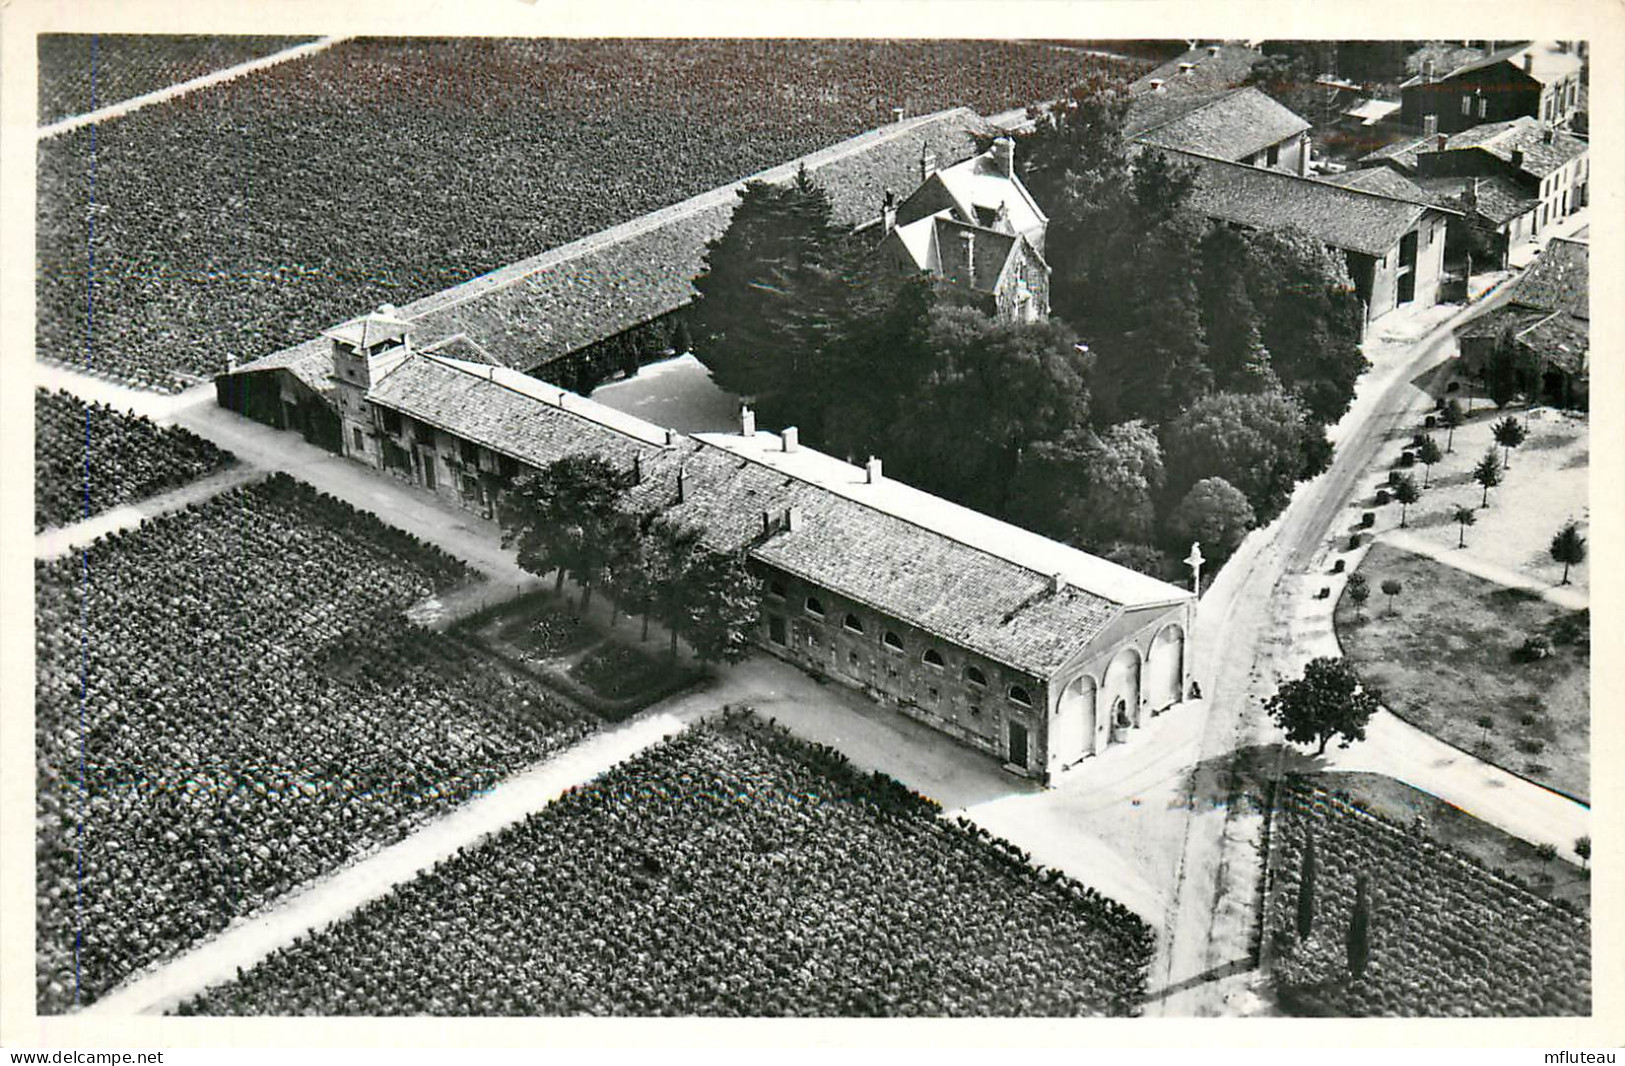 33* PAUILLAC  Chateau Mouton Rothschild   (CPSM 9x14cm)      RL23,0861 - Pauillac